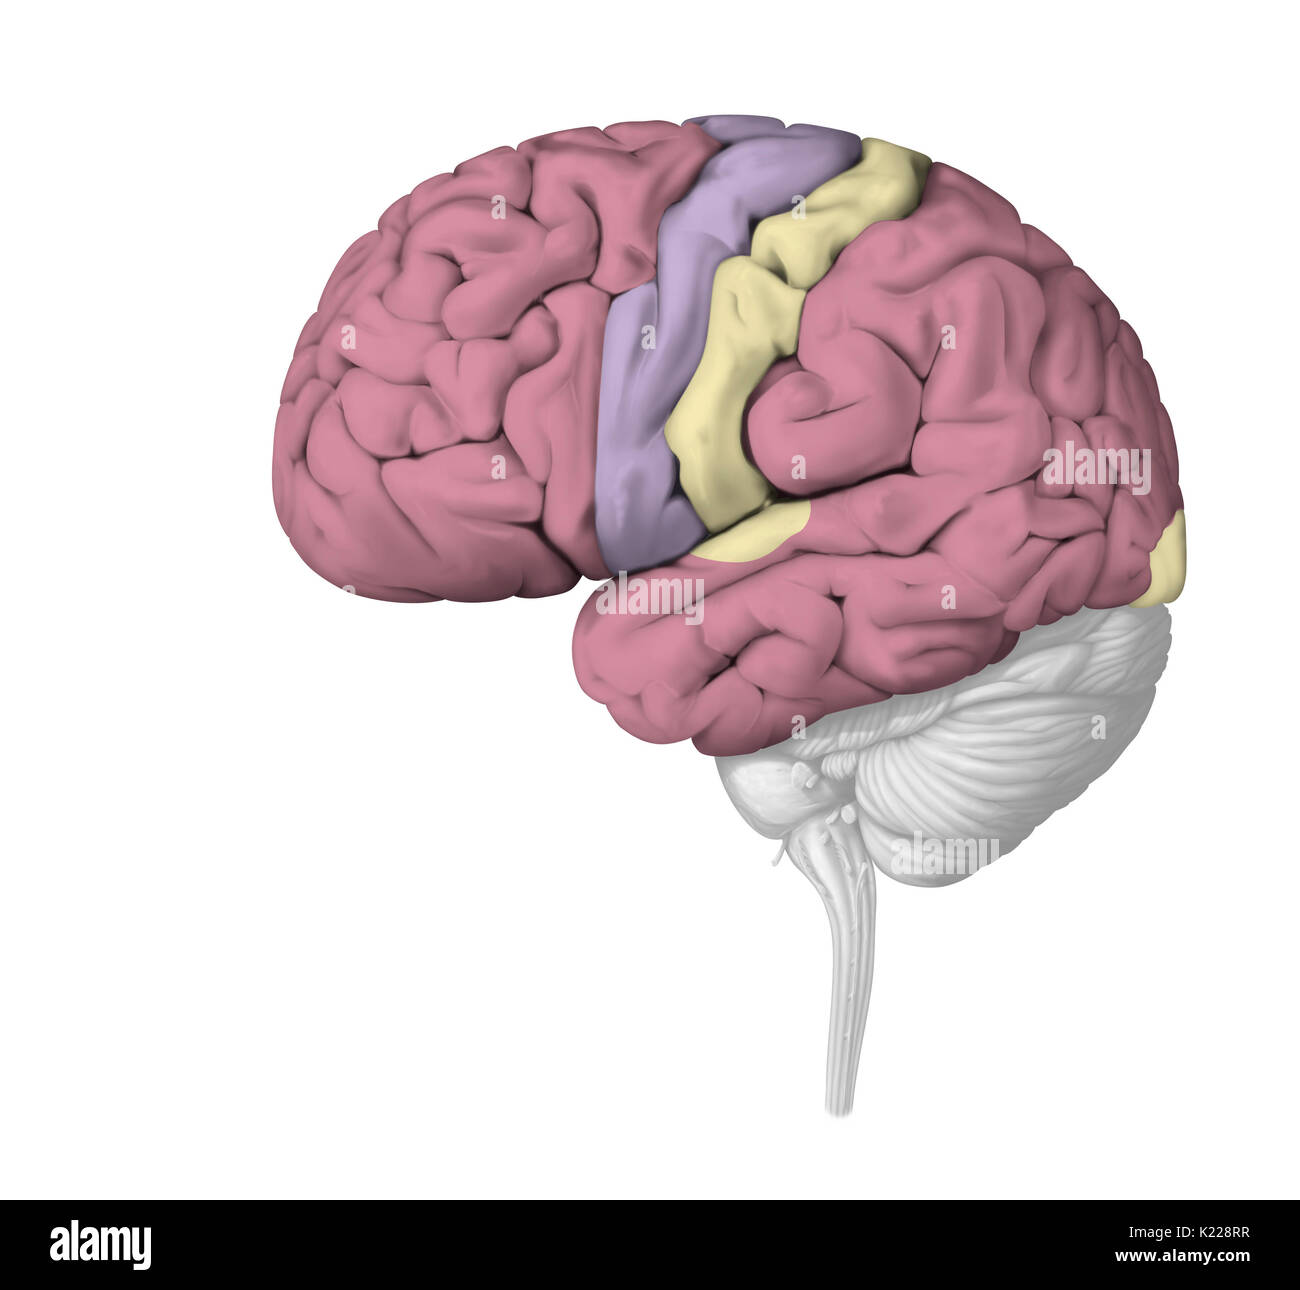 Le cortex cérébral complète le plus élaboré en fonctions nerveux : le traitement de l'information, la perception sensorielle, le mouvement volontaire, et les fonctions cognitives telles que la langue et la mémorisation. C'est la localisation de la conscience. Banque D'Images